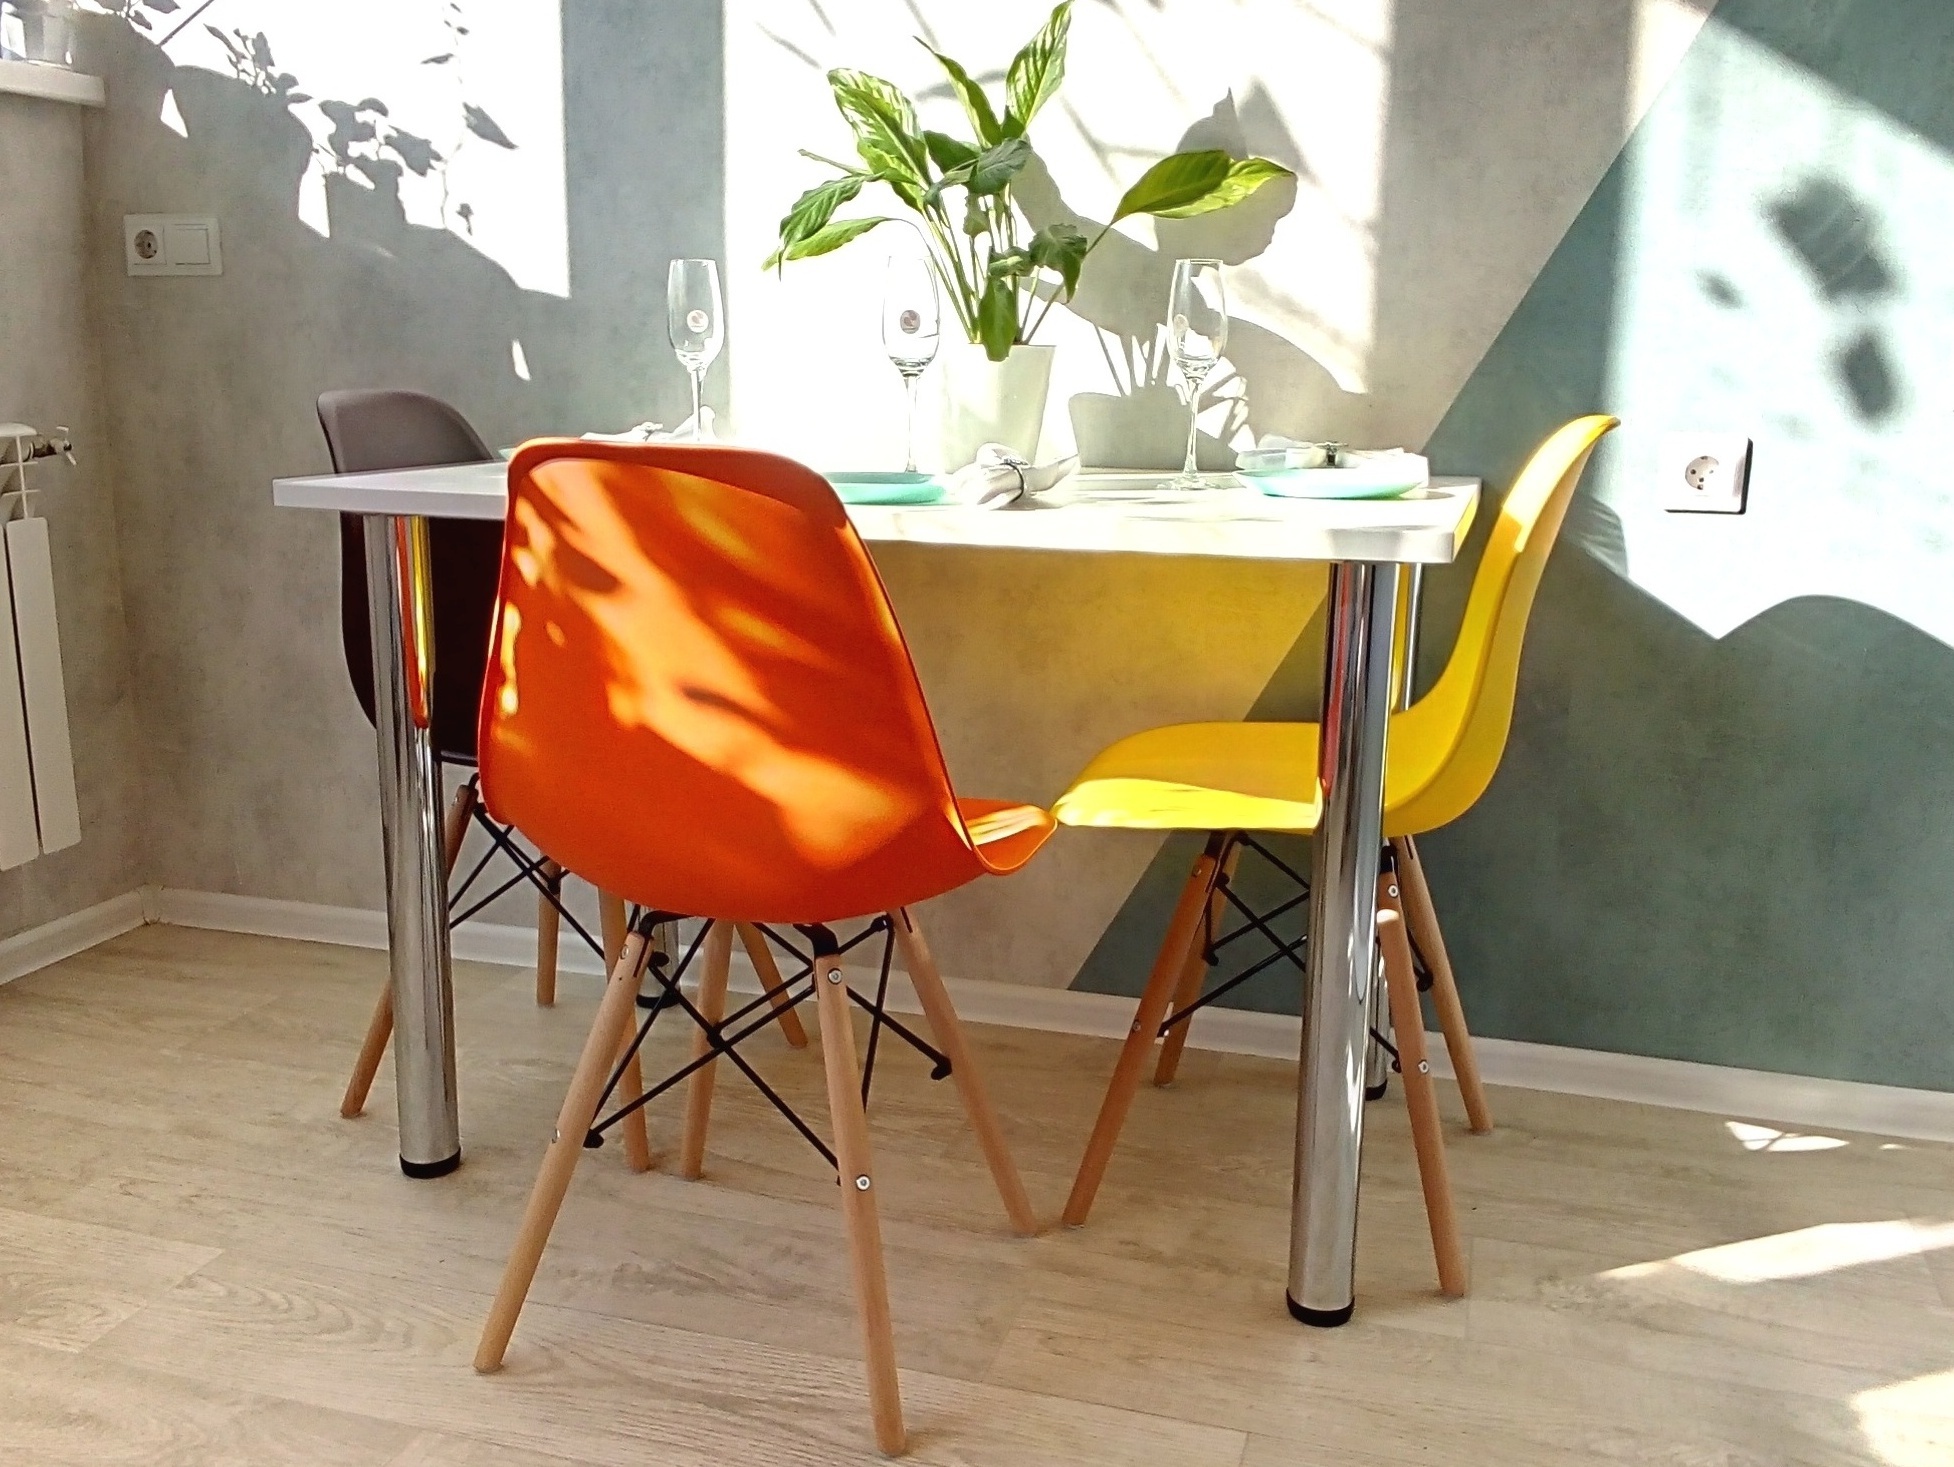 Столы и стулья на ЗАКАЗ✴️ оформить заказ столов и стульев - индивидуальные размеры, цвет, материалы